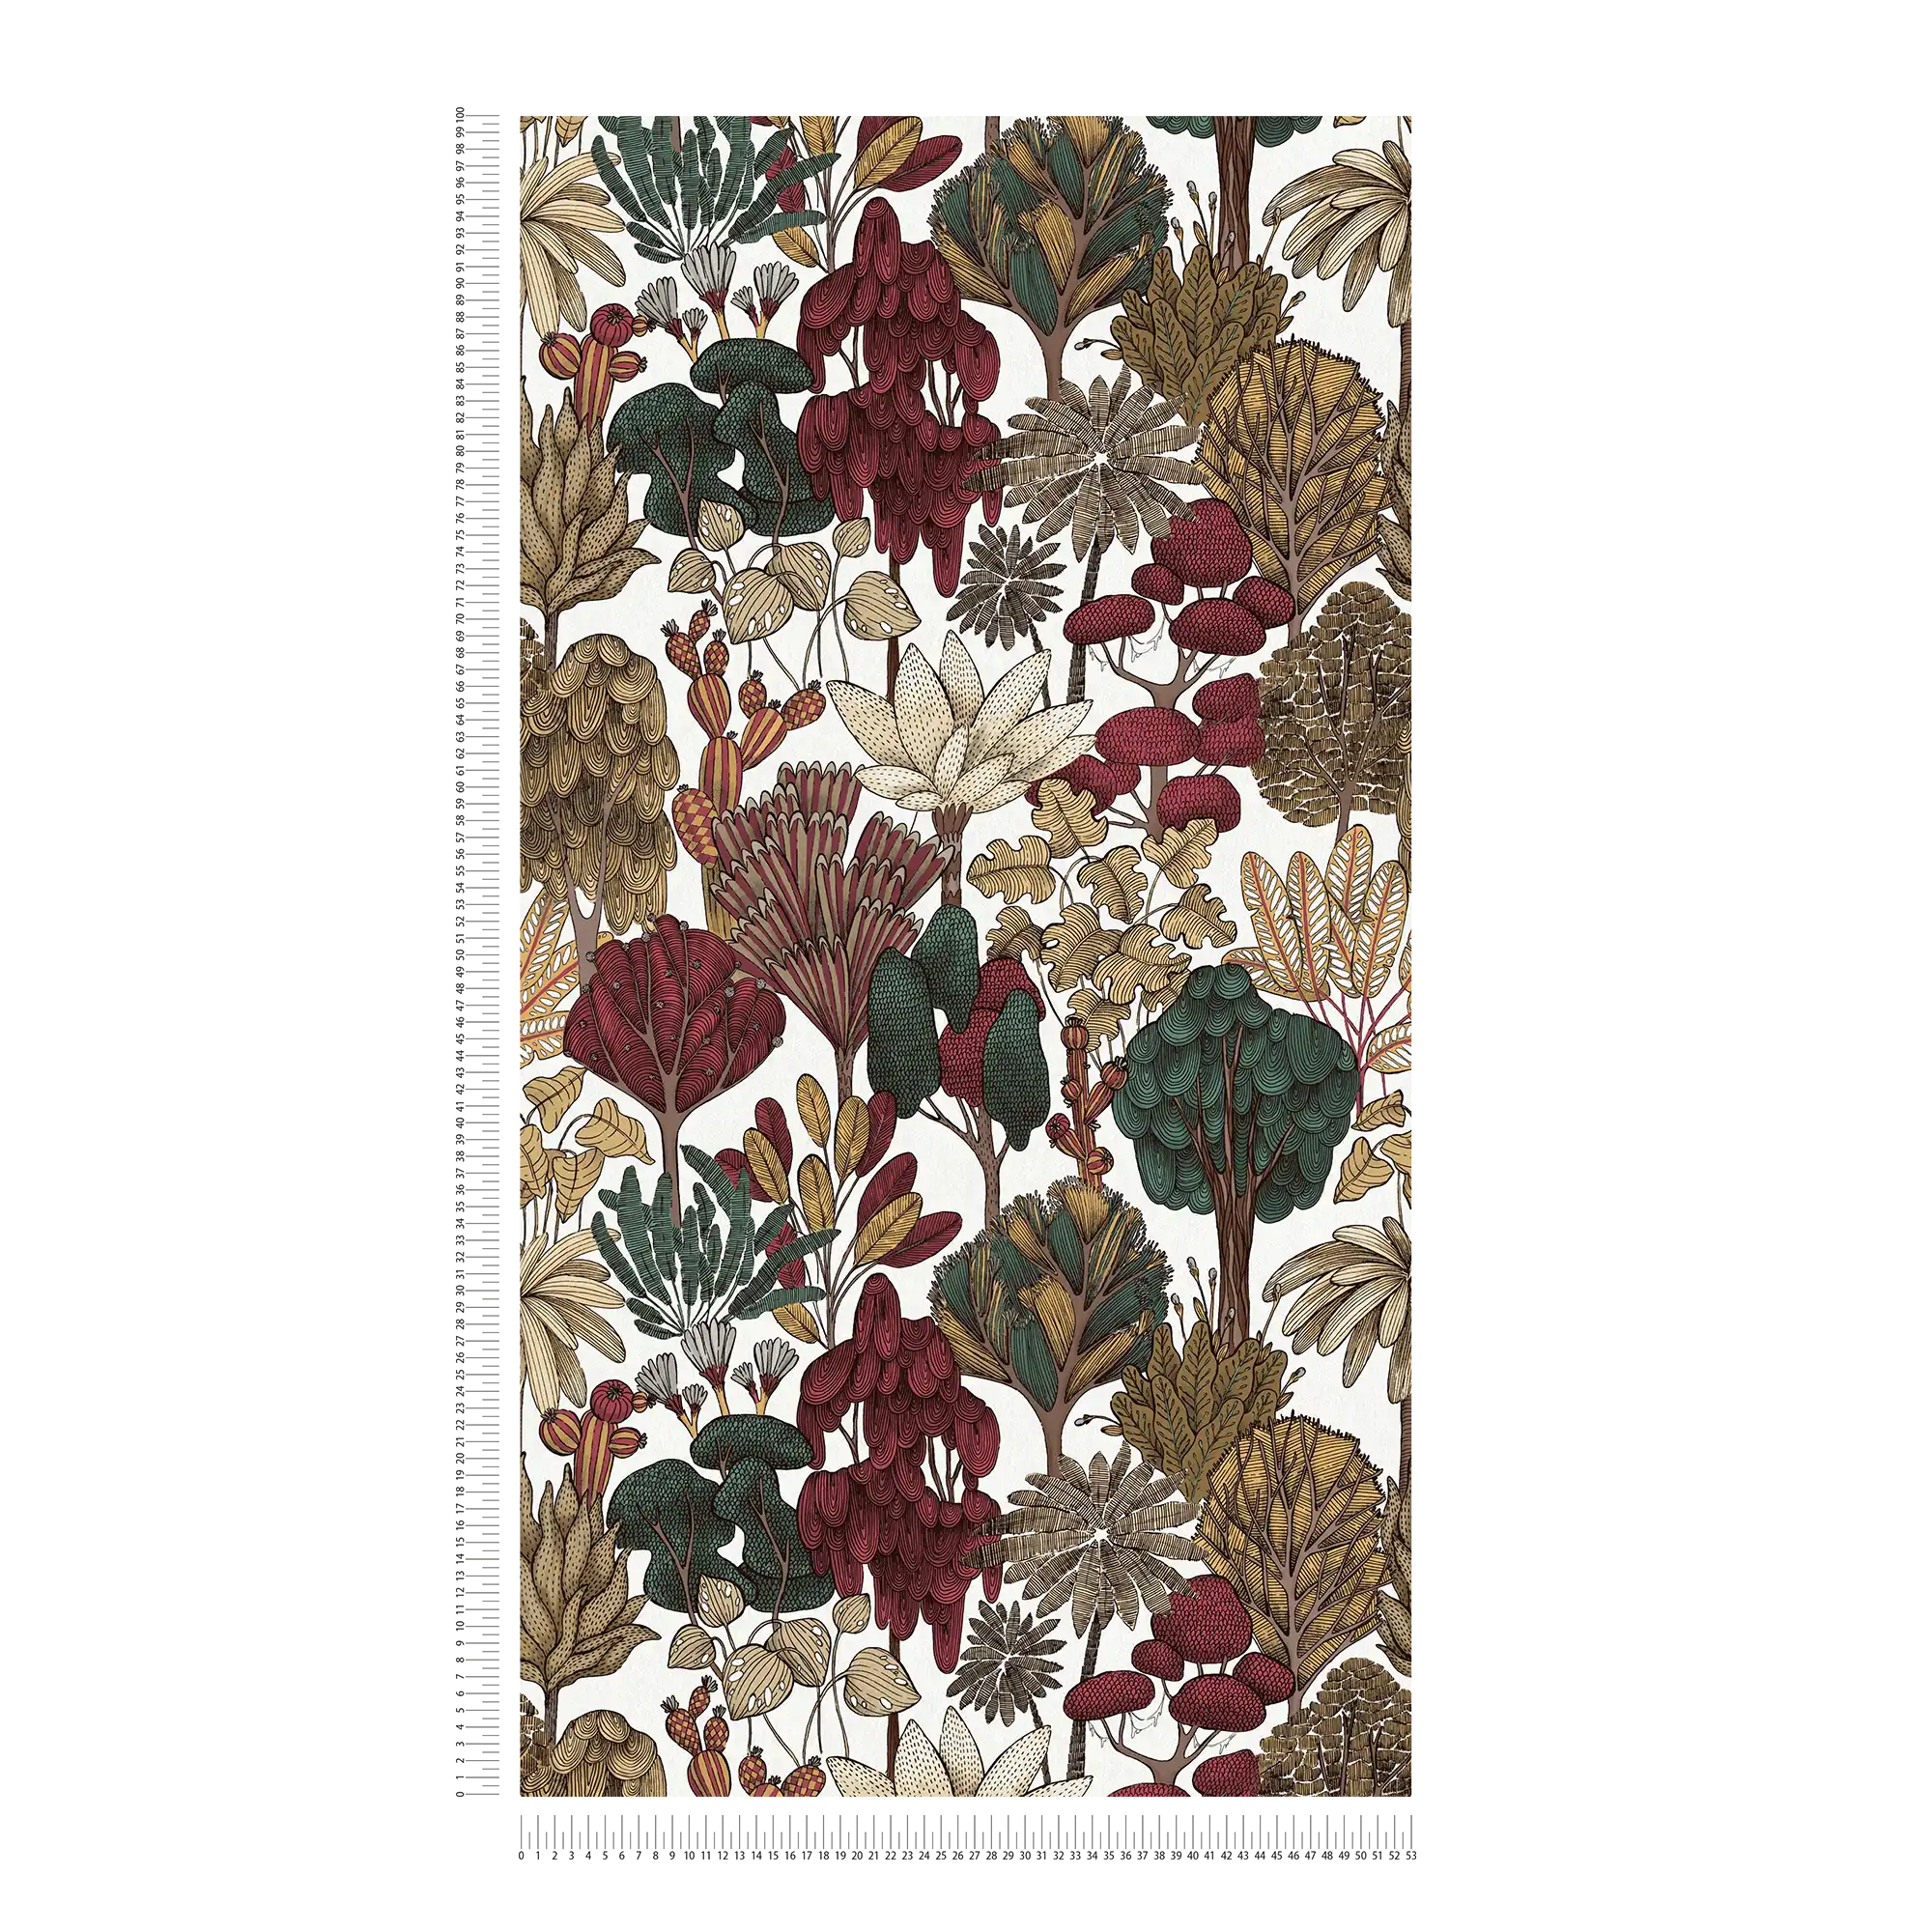             Papel pintado moderno floral con árboles en estilo dibujo - rojo, beige, marrón
        